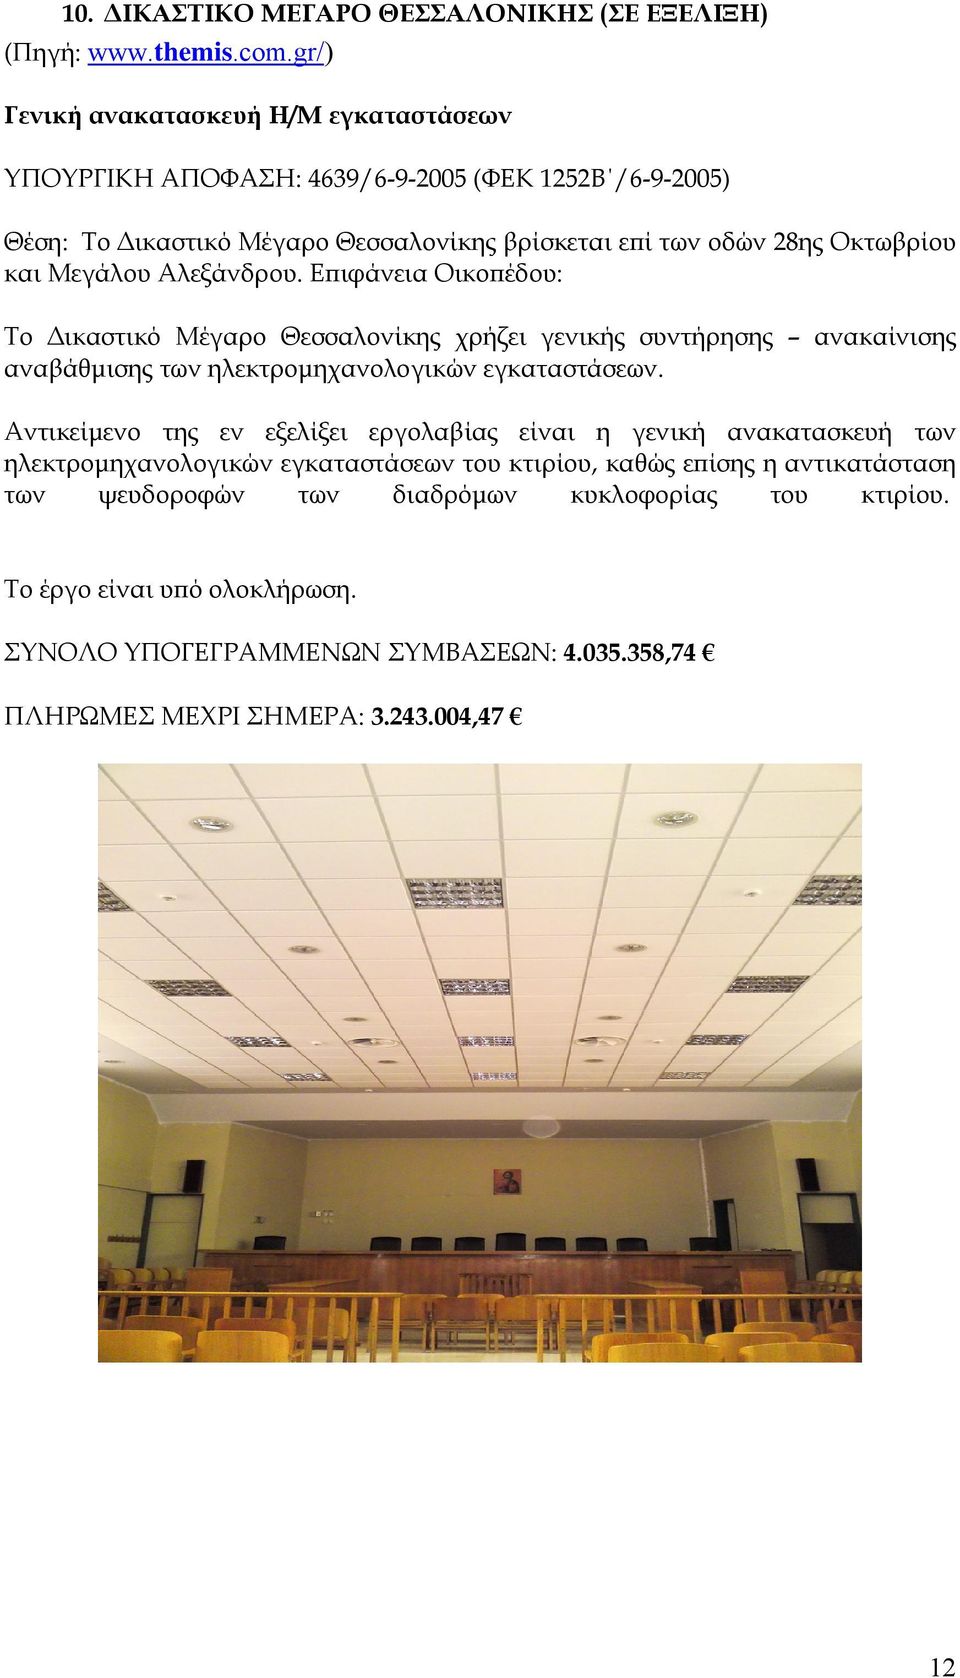 Επιφάνεια Οικοπέδου: Το Δικαστικό Μέγαρο Θεσσαλονίκης χρήζει γενικής συντήρησης ανακαίνισης αναβάθμισης των ηλεκτρομηχανολογικών εγκαταστάσεων.